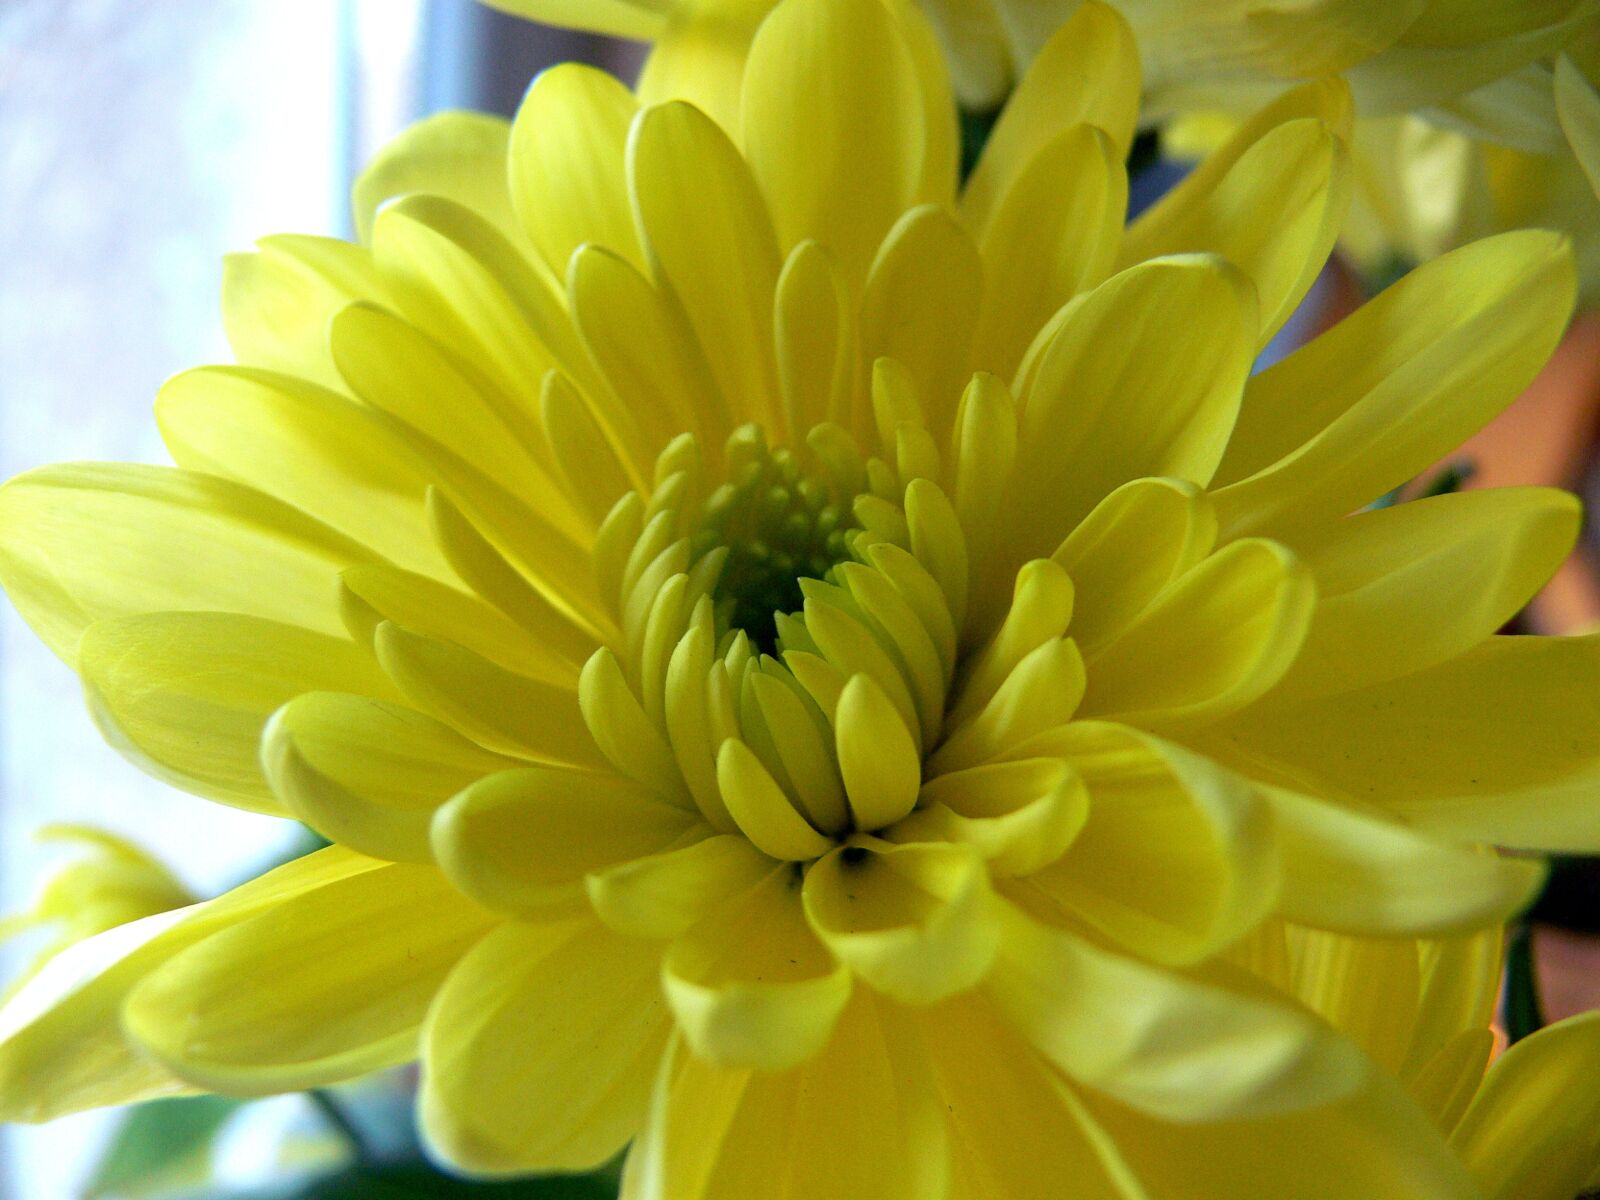 Panasonic DMC-FZ30 sample photo. Flower, yellow, yellow flower photography